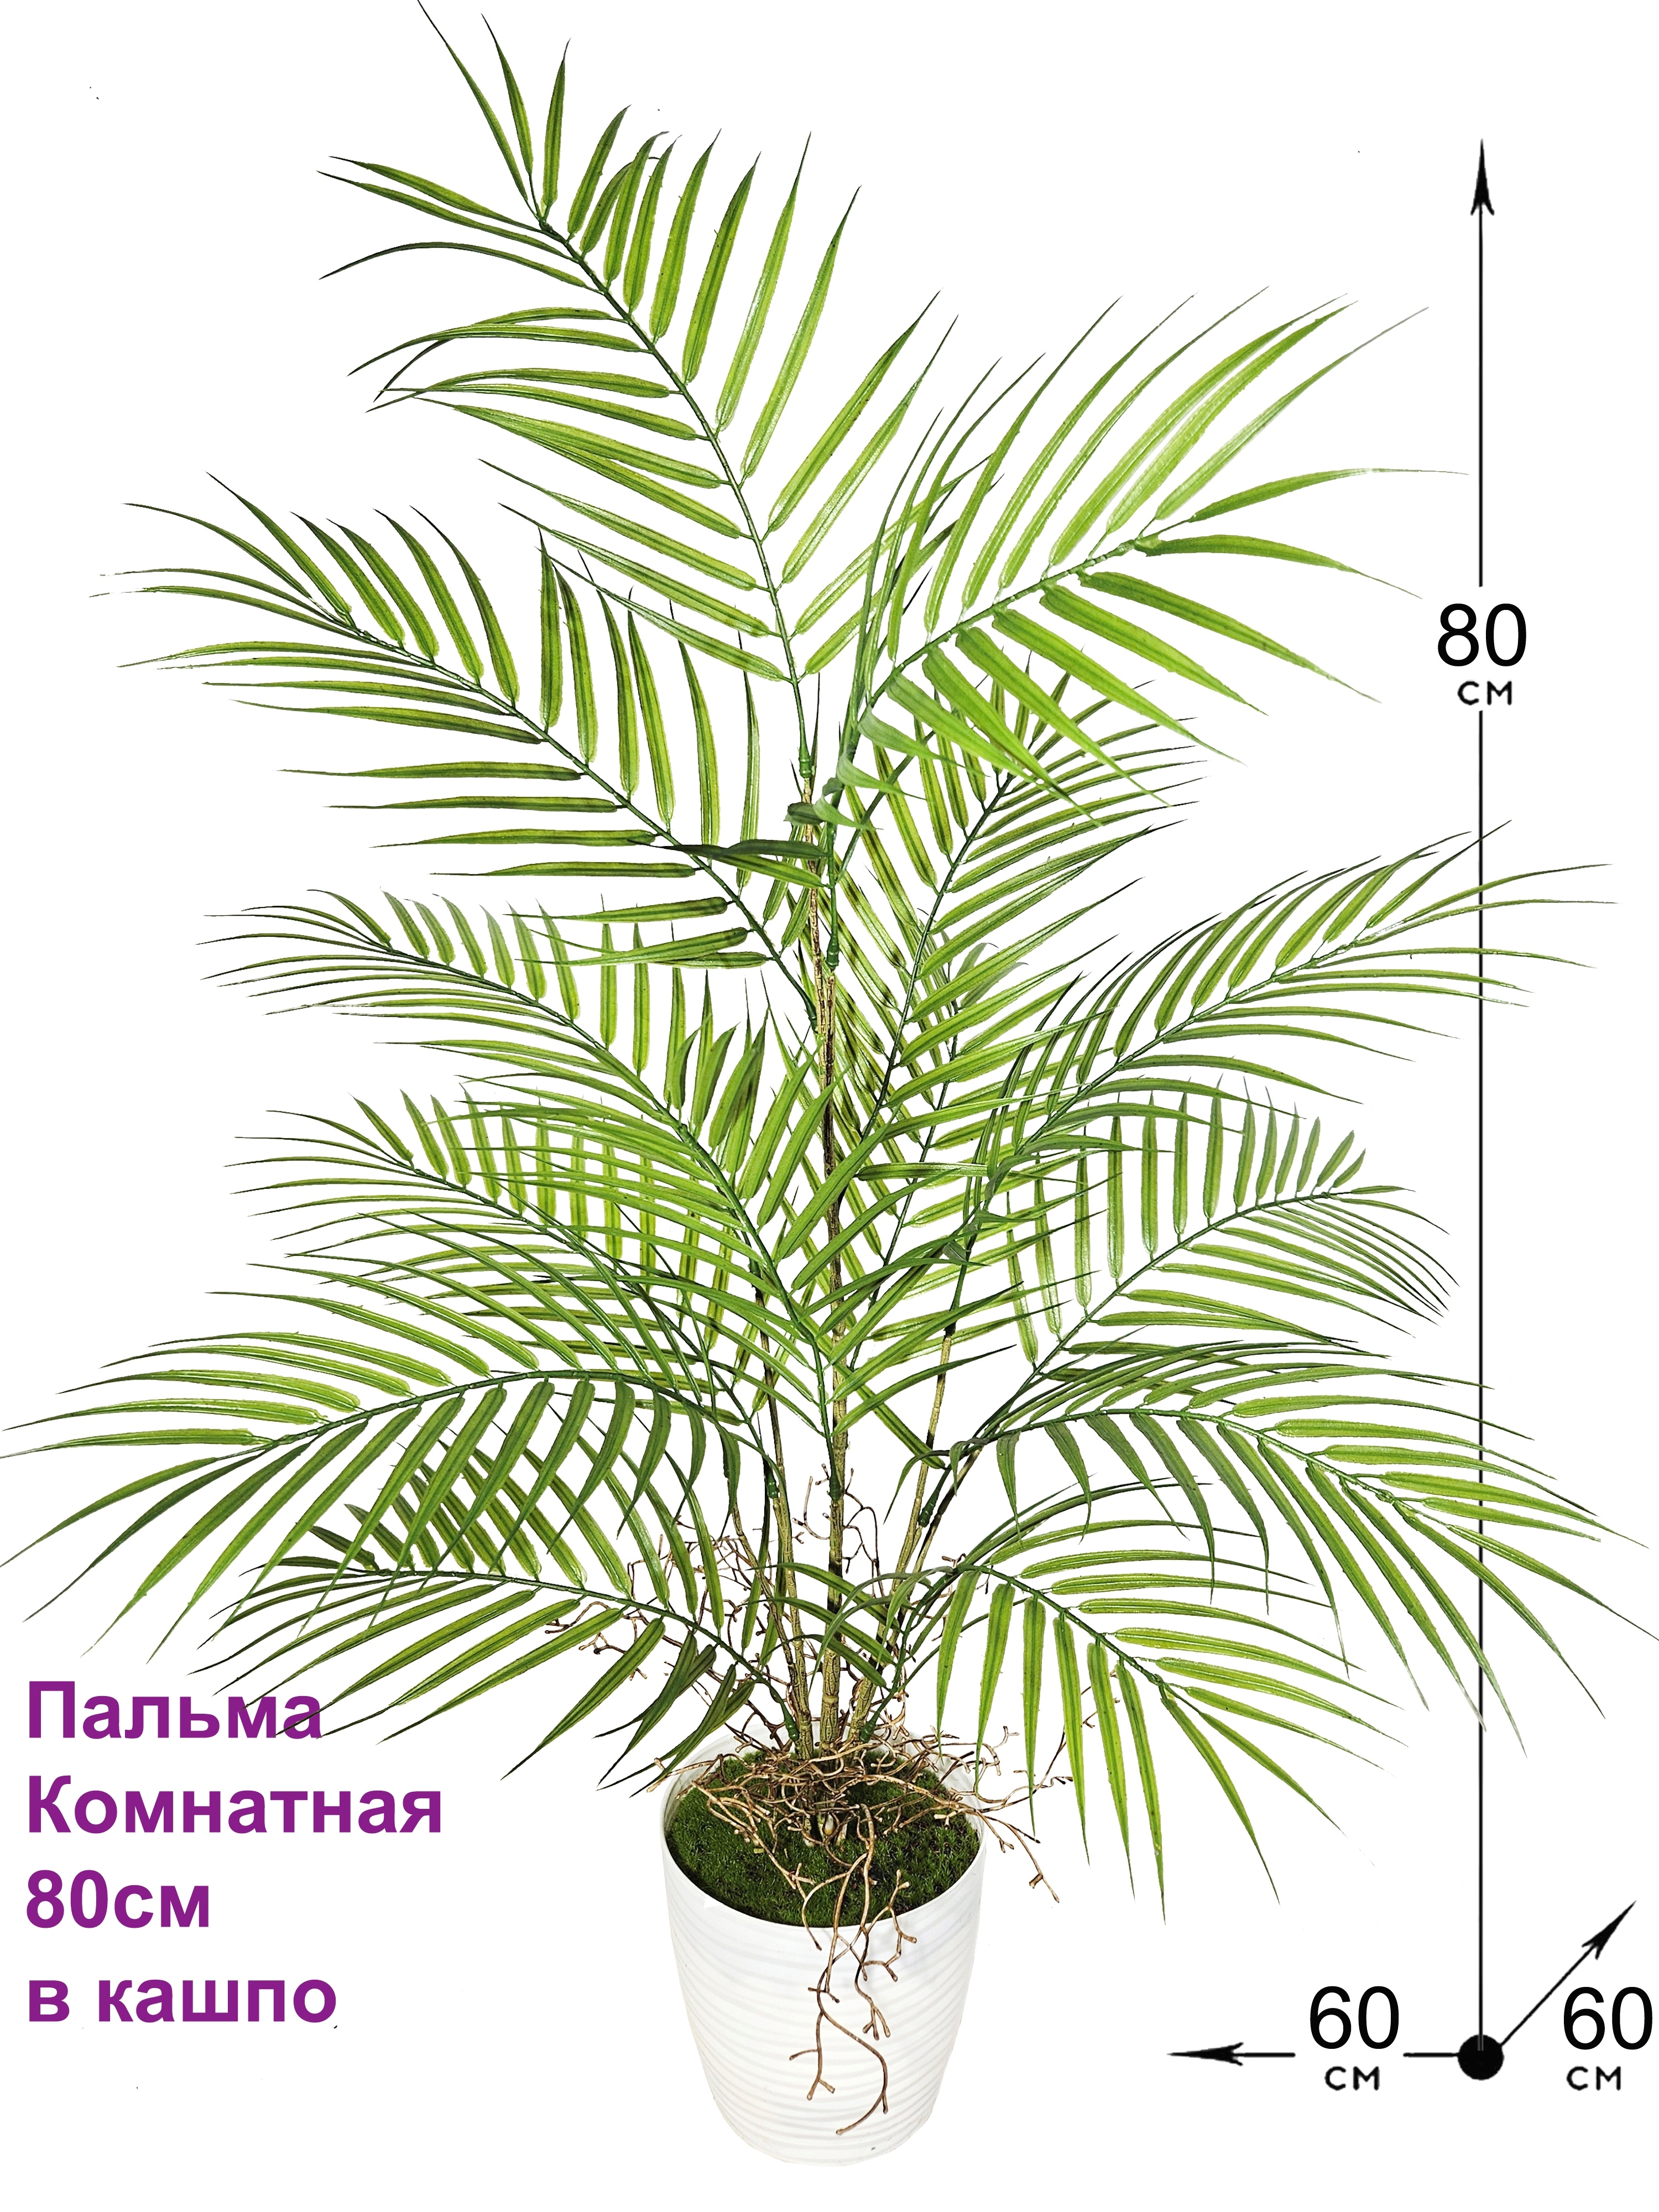 Купить пальму комнатную в горшке в Москве: фото, названия